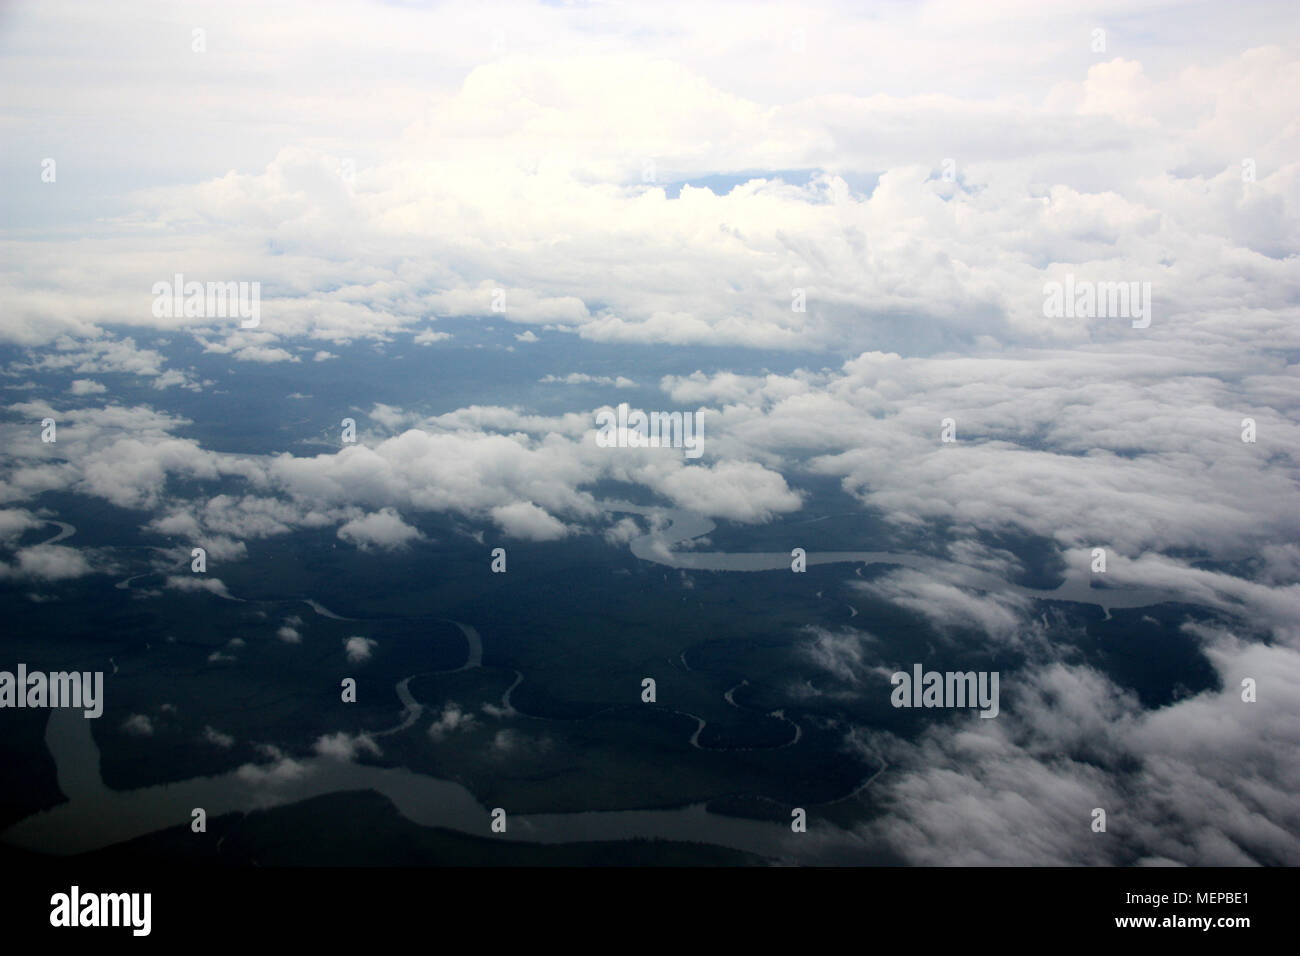 Vista aerea del monte Camerun coperto dalle nuvole, vicino a Douala Camerun Foto Stock